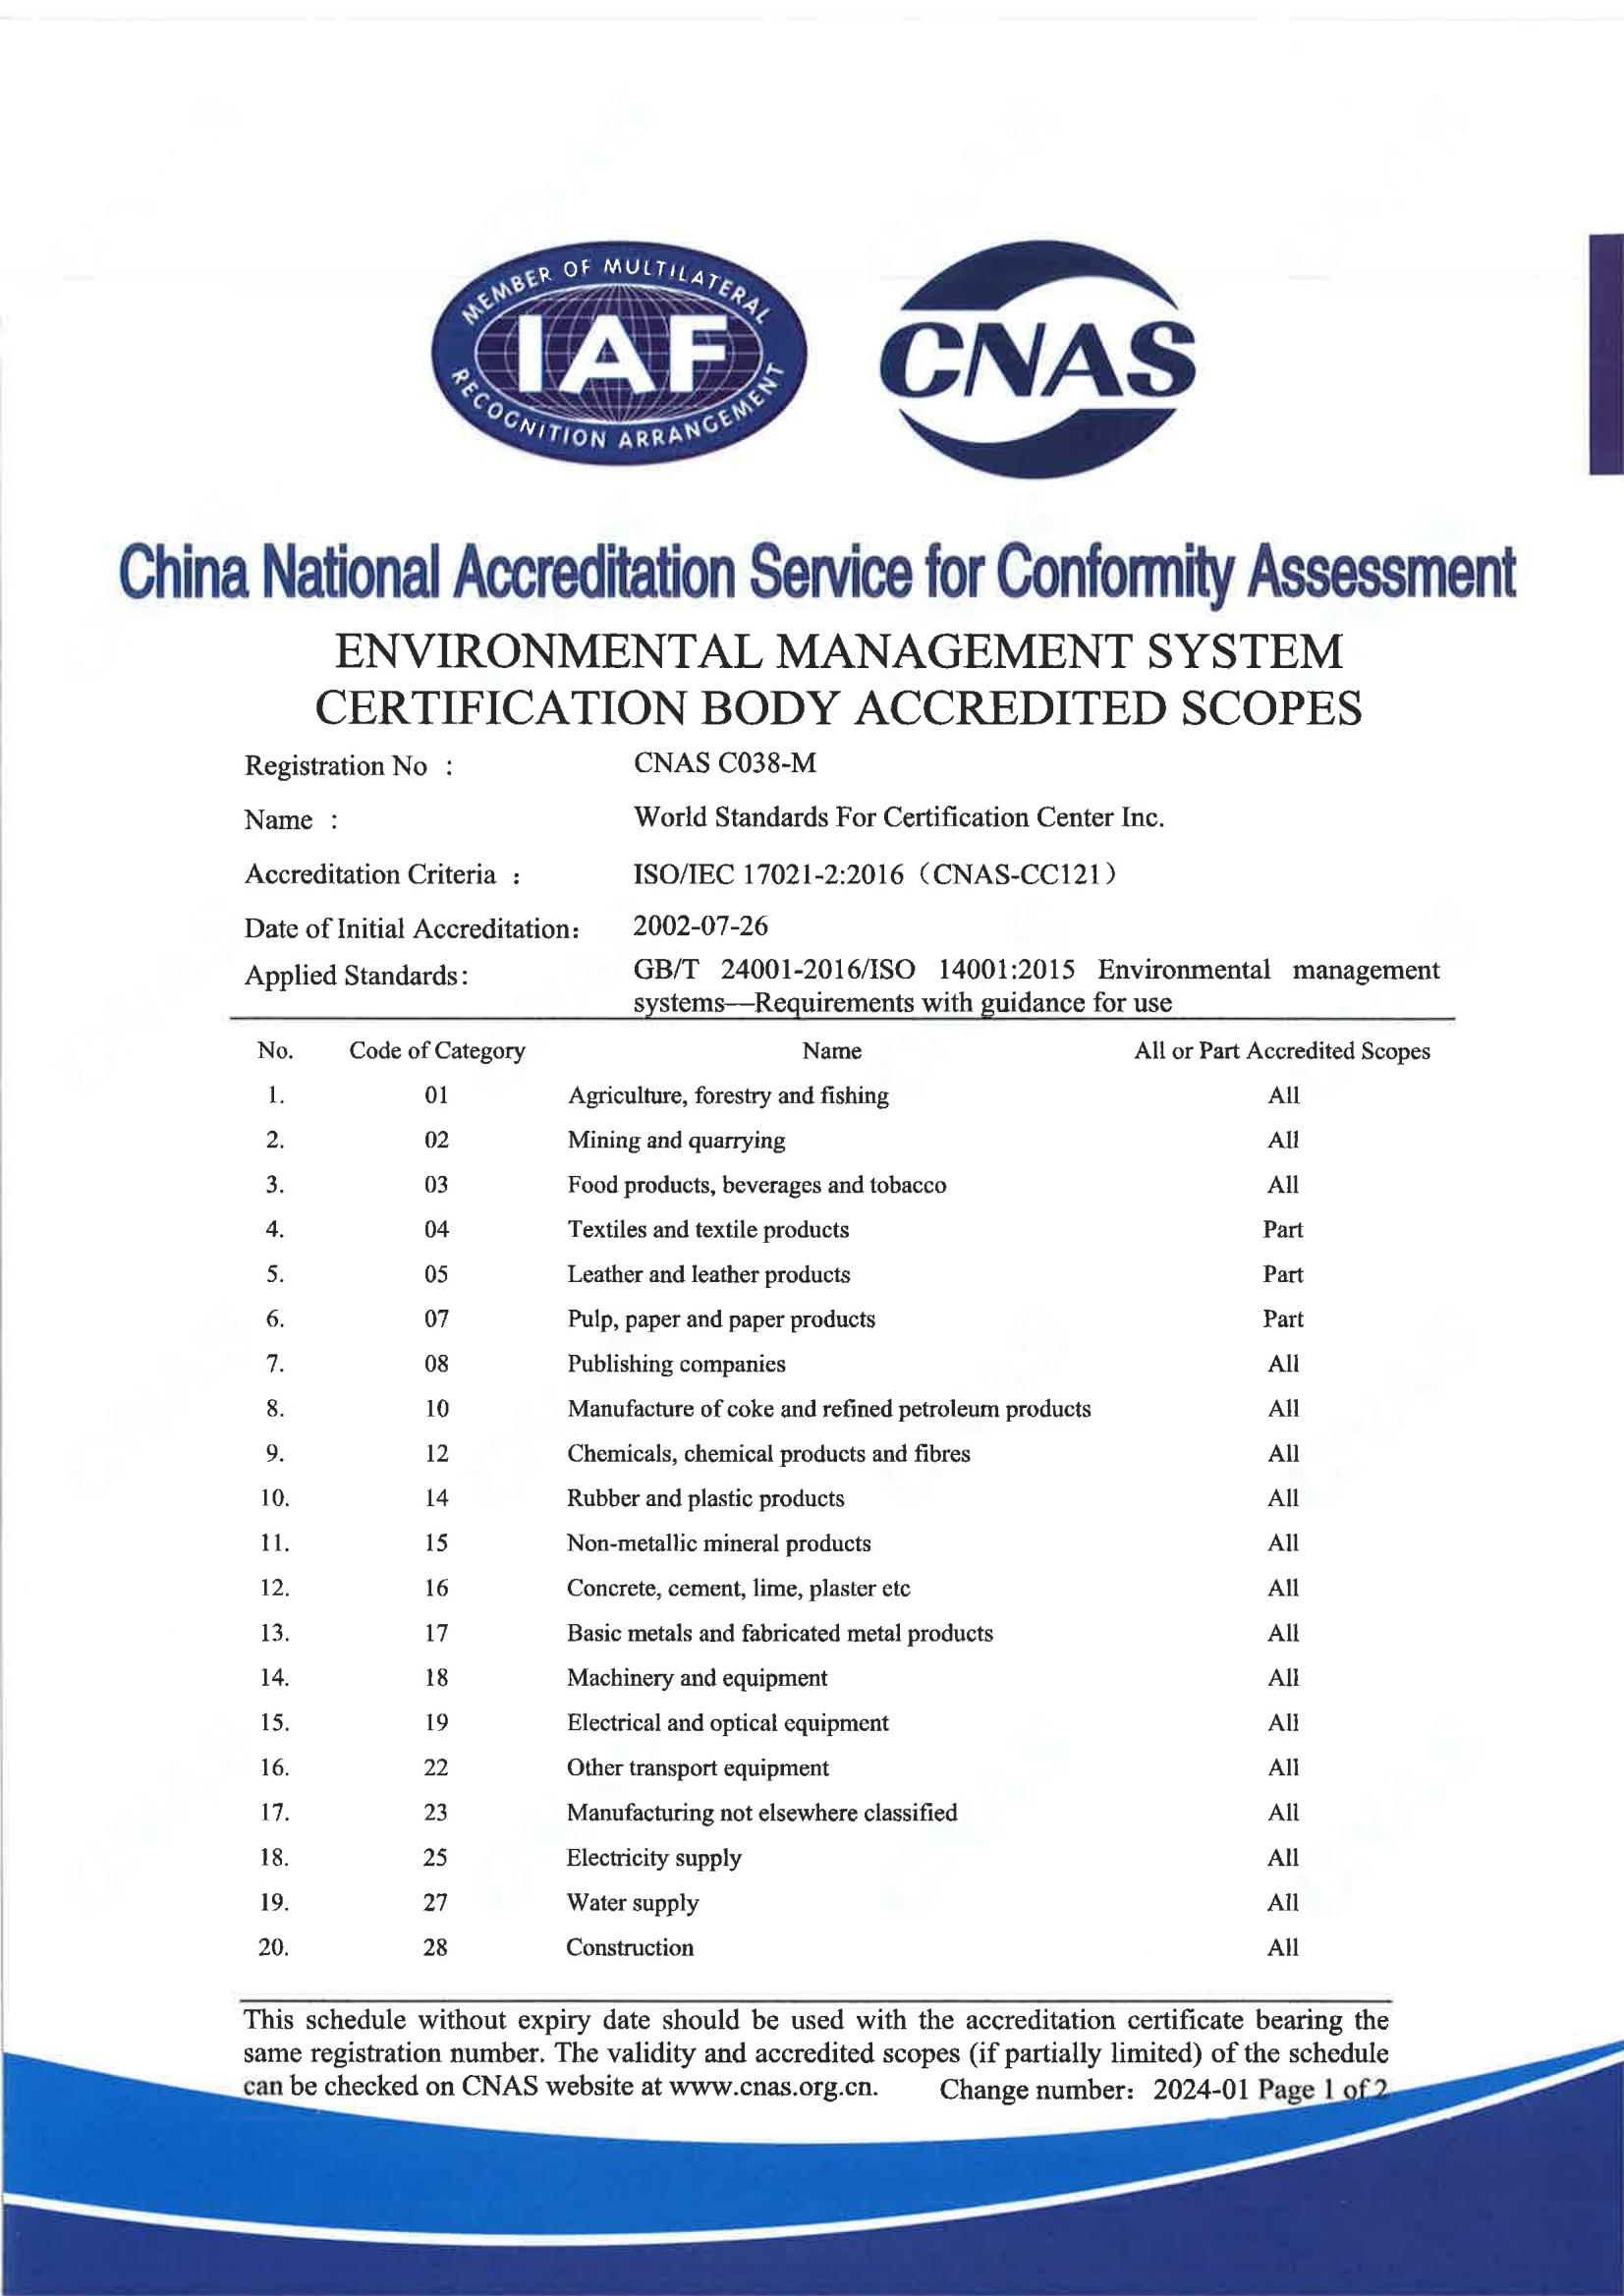 环境管理体系认证机构认可业务范围-中英版_02.jpg